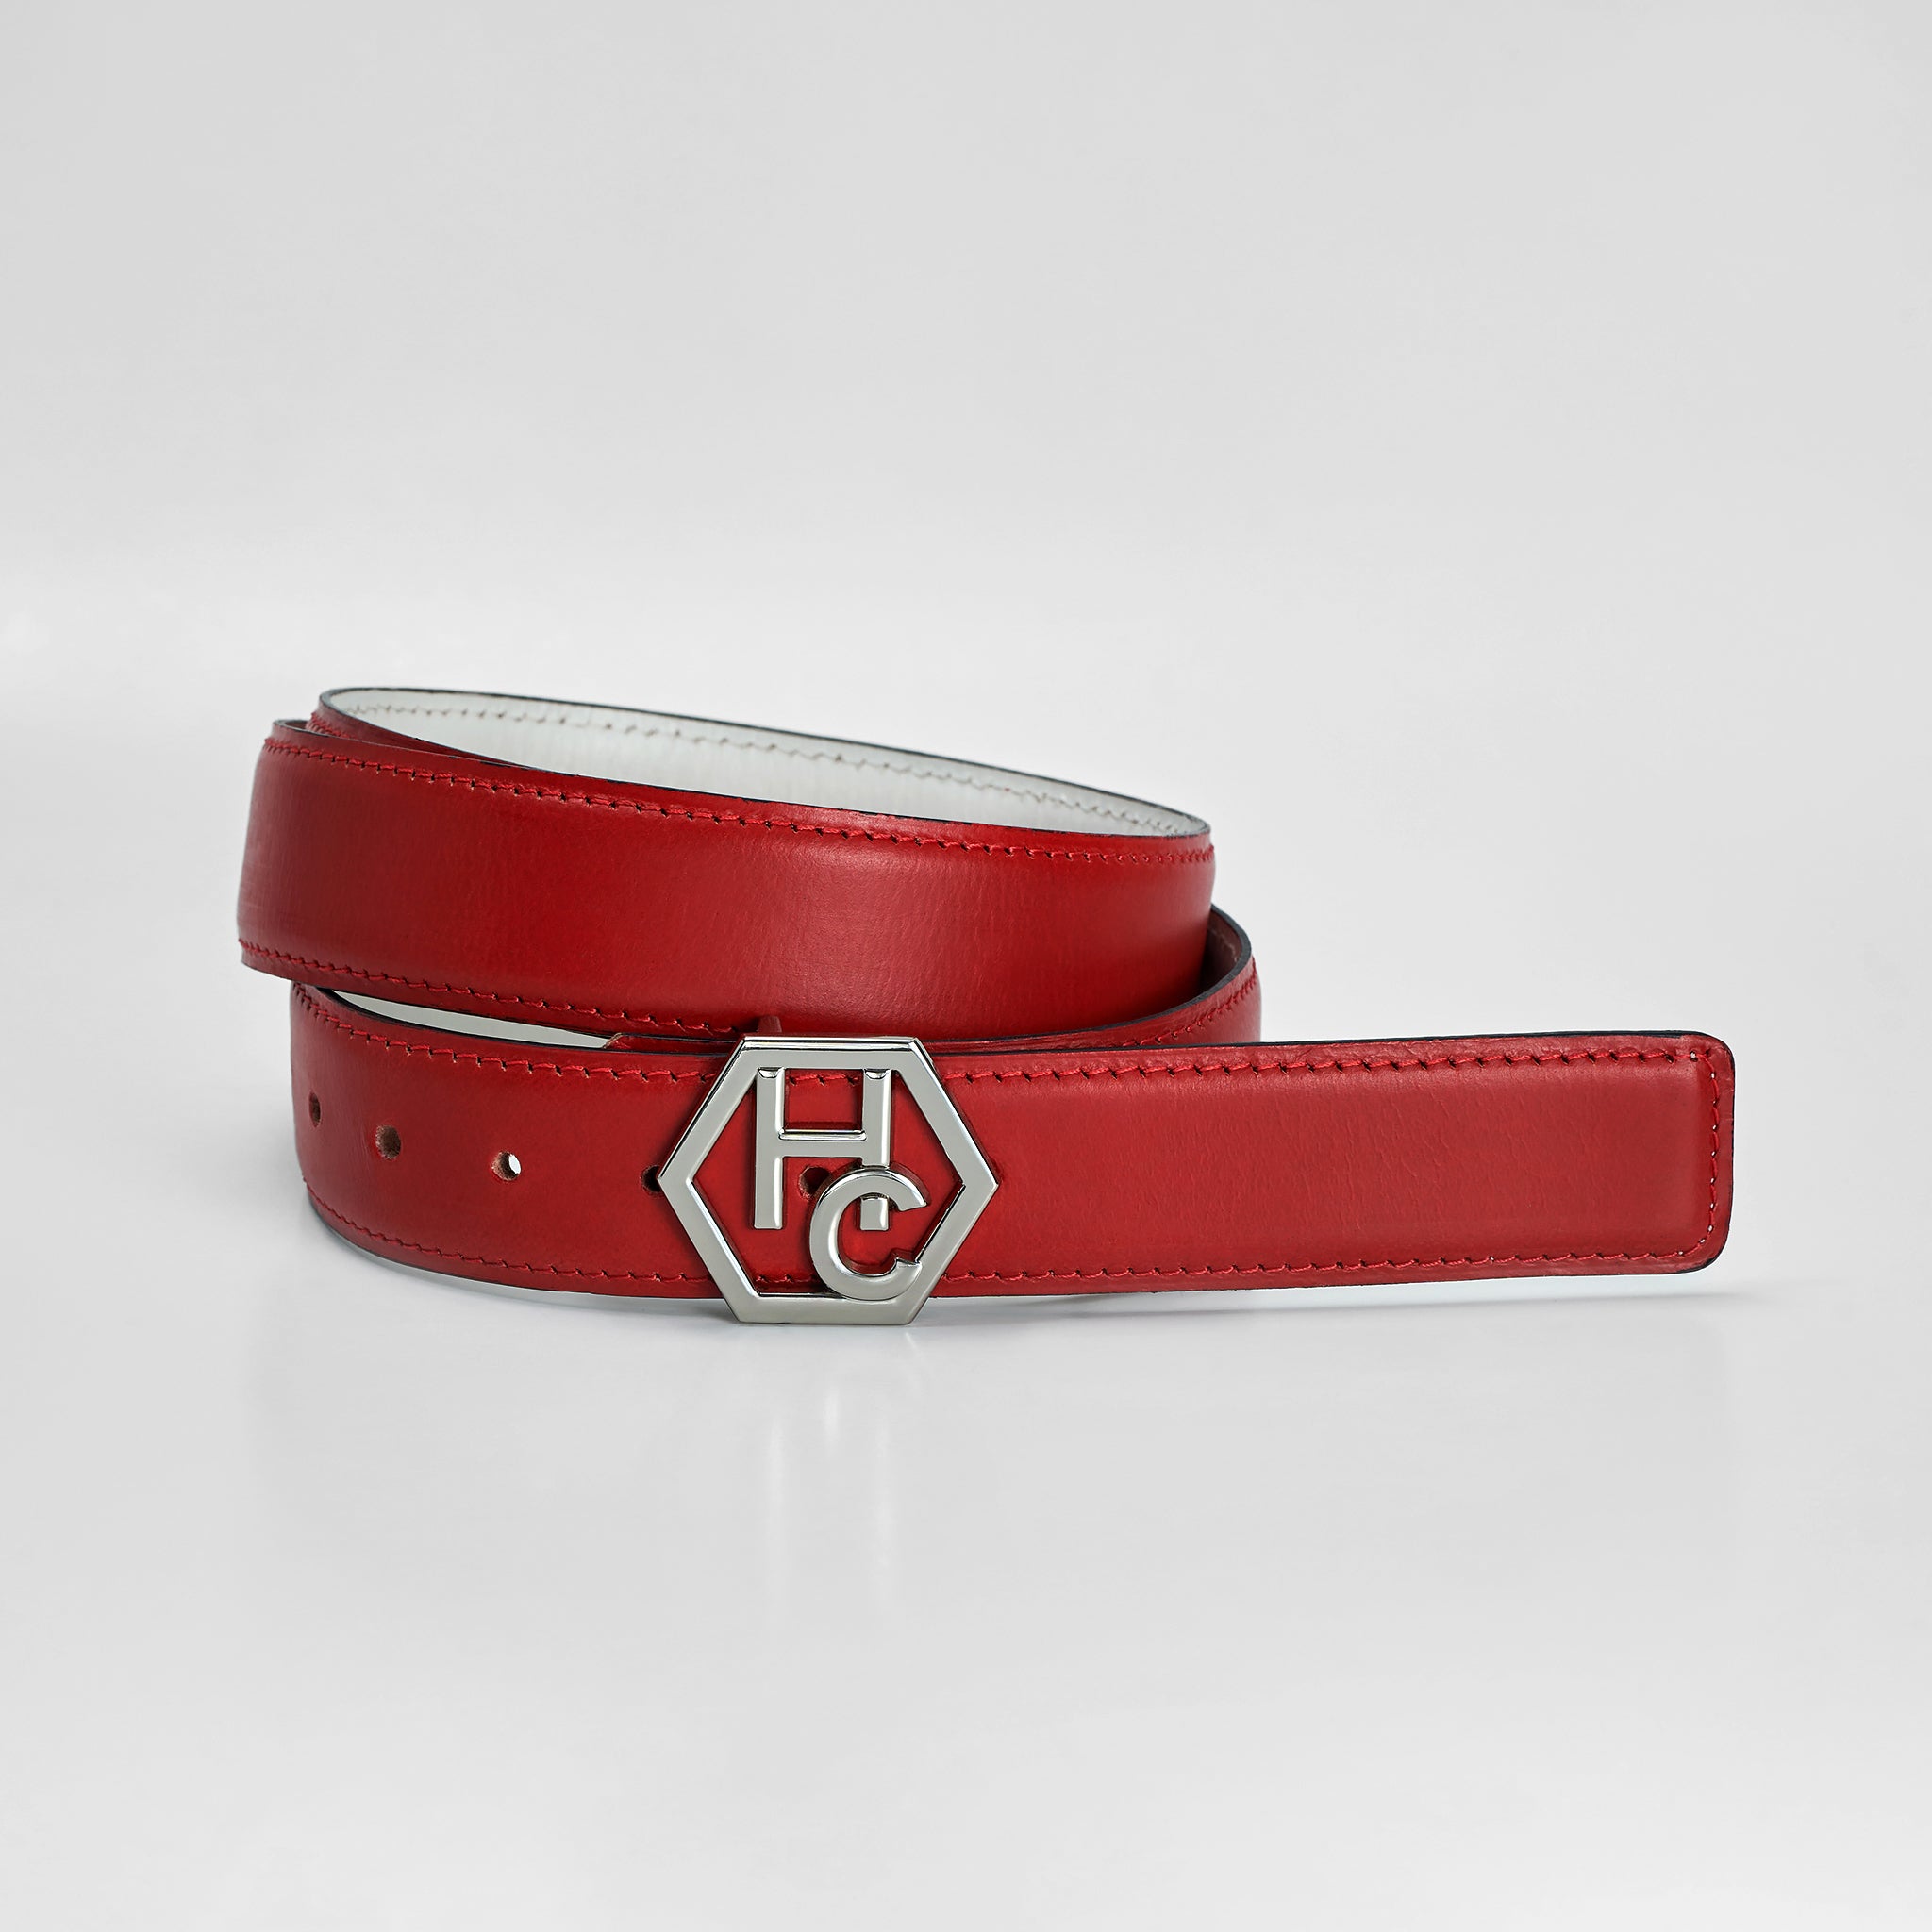 Hedonist Women's Belt 1.3" Red